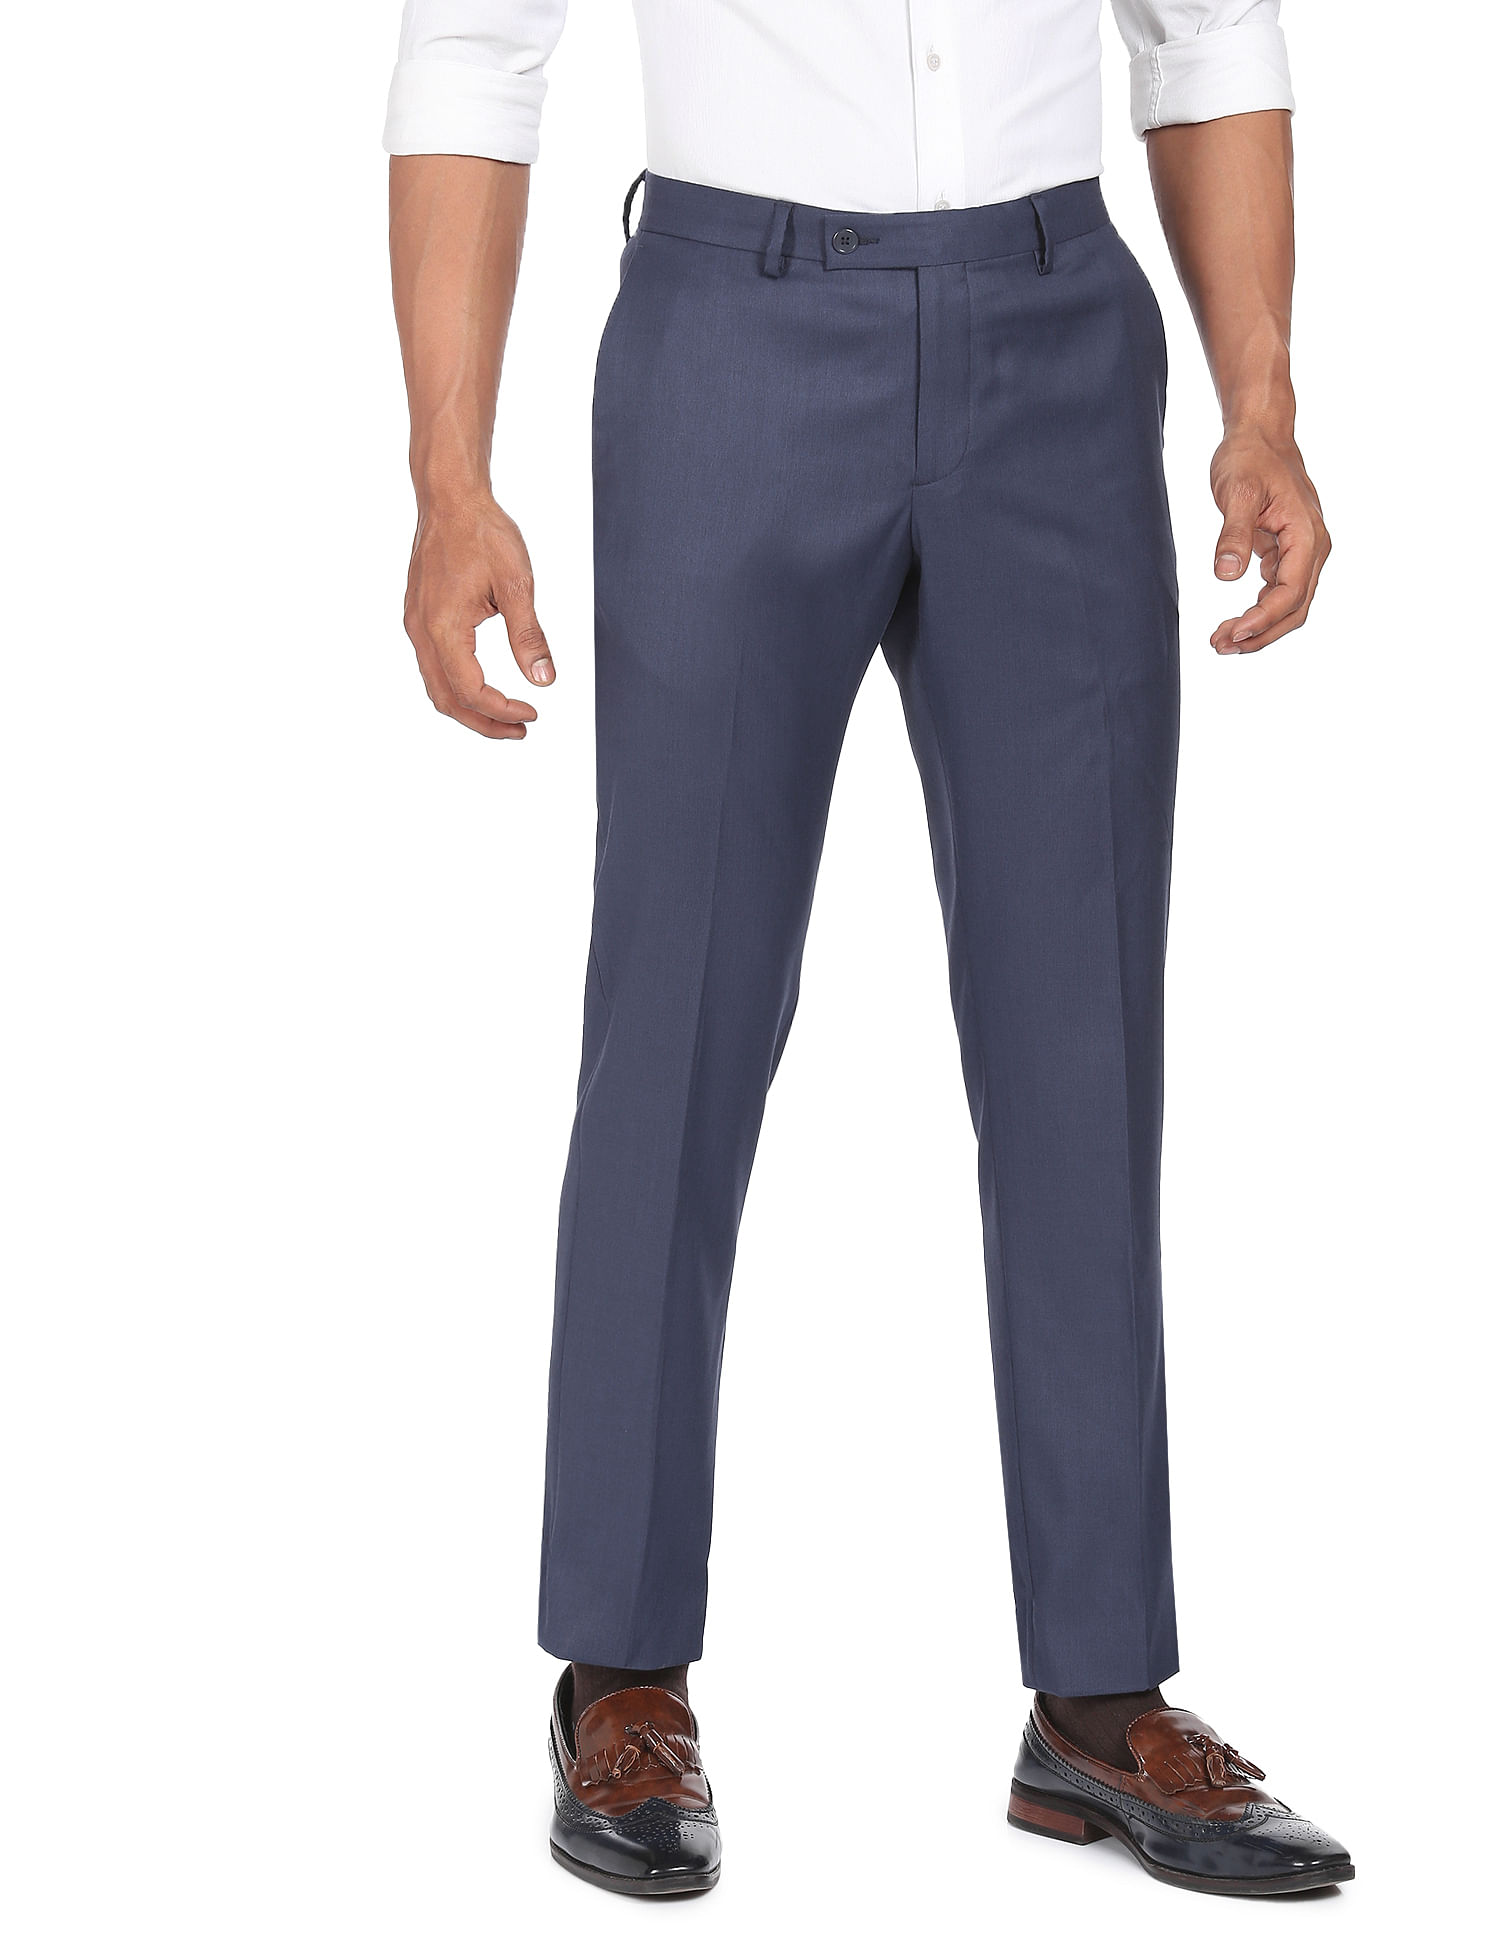 Buy ELANHOOD Men's Regular Fit Formal Trousers/Pant Black:Blue:Grey 28 at  Amazon.in